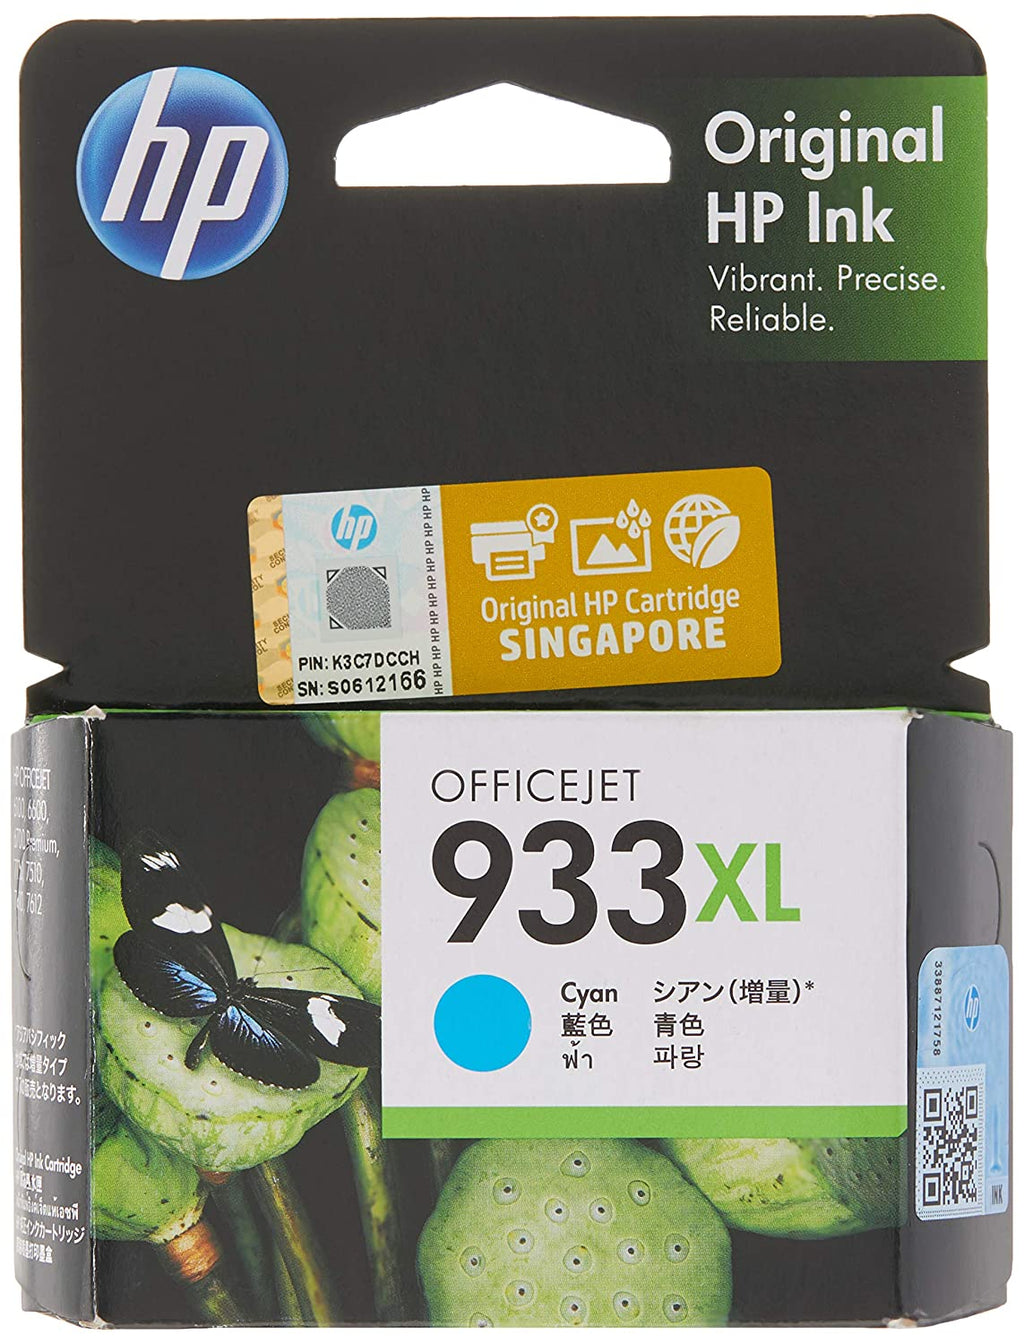 HP 933XL Cyan Officejet Ink Cartridge Pack of 4